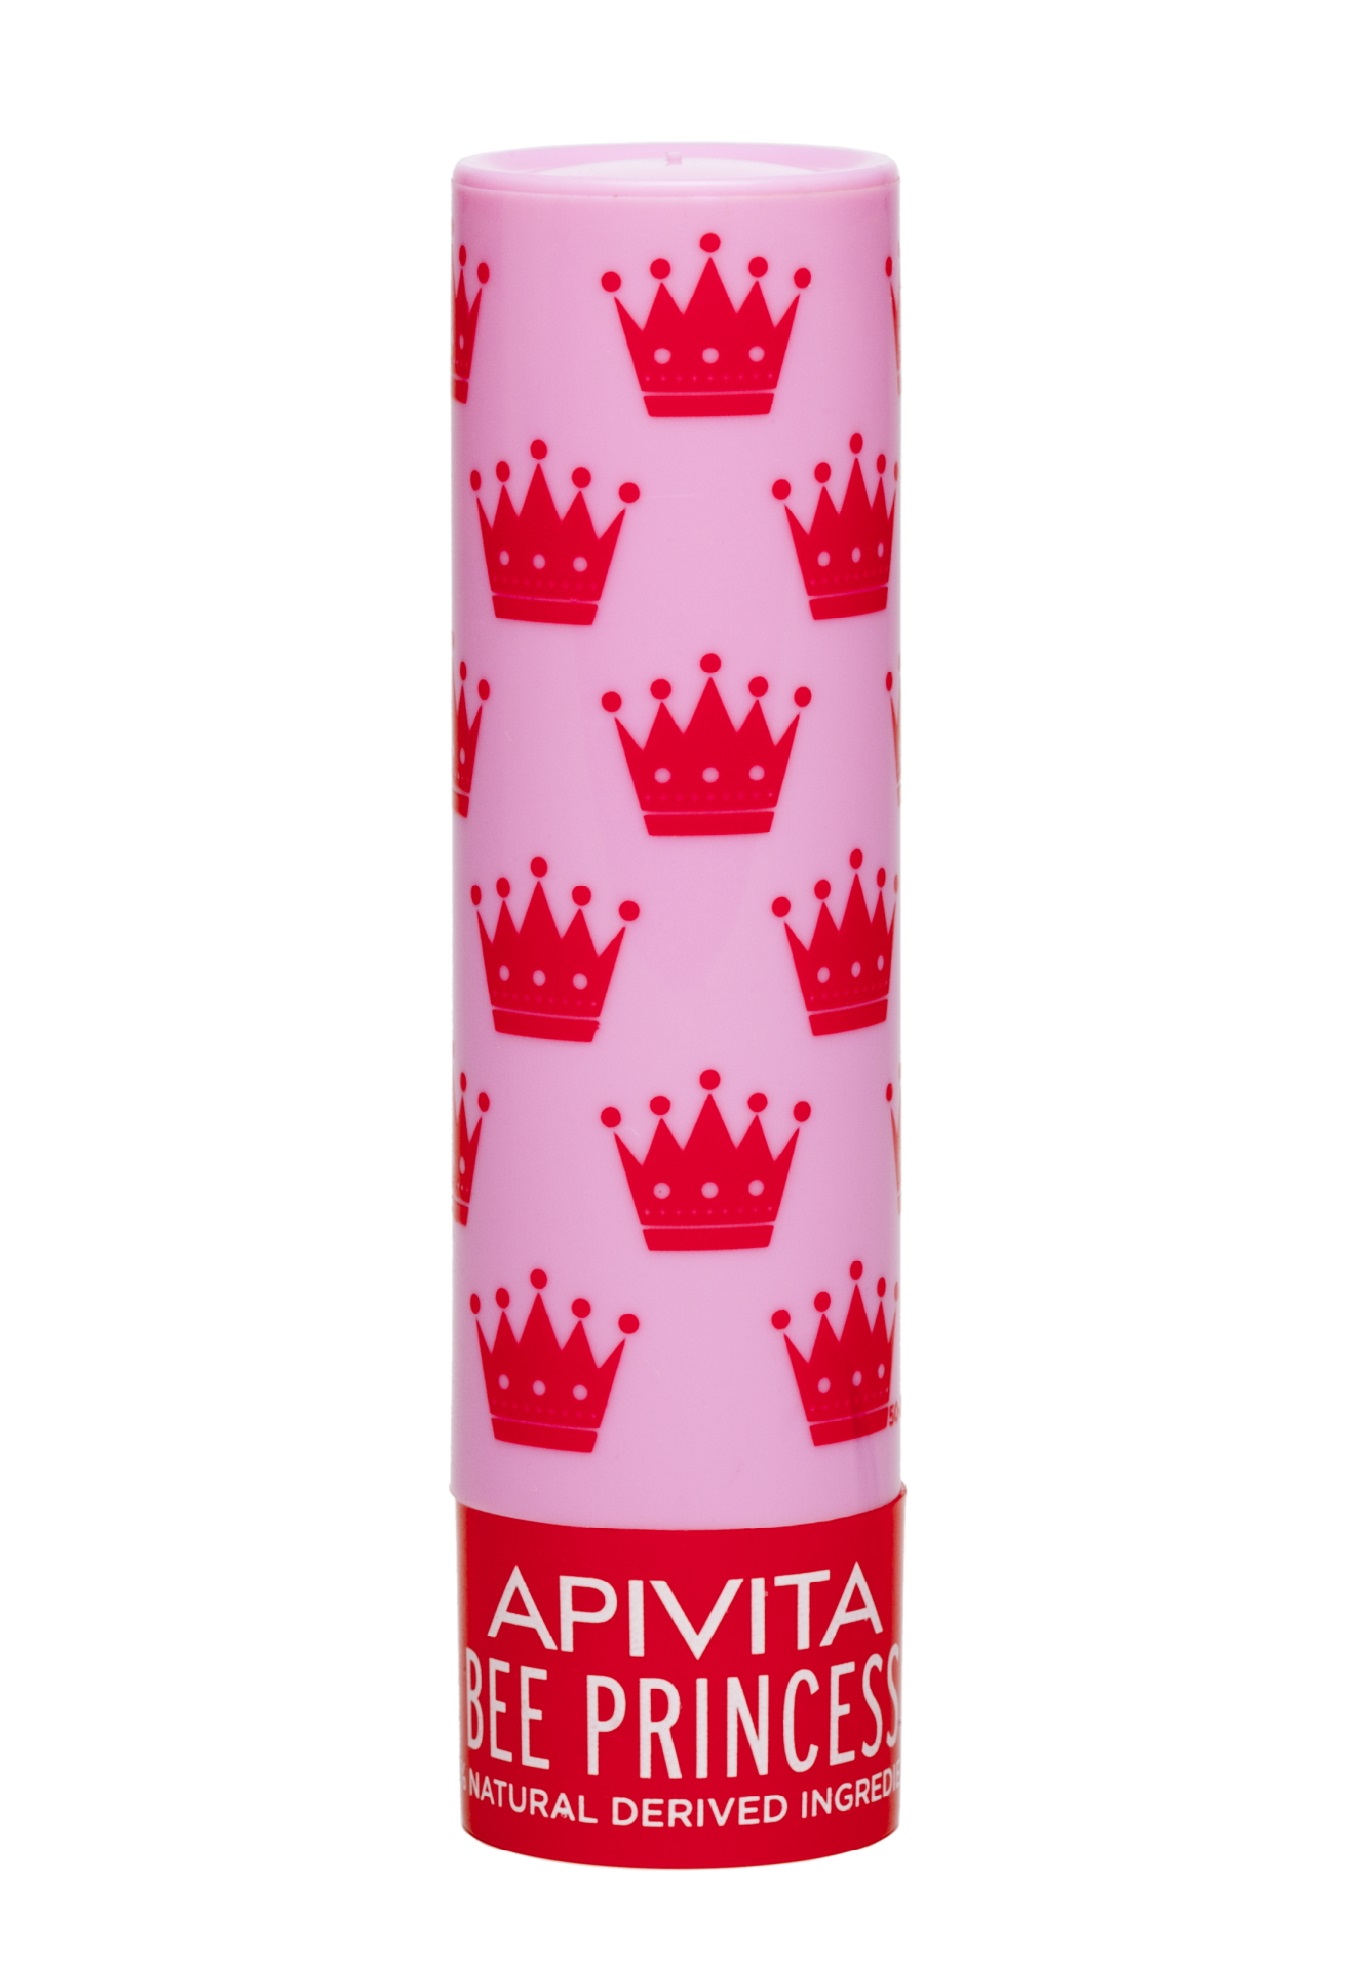 Apivita Уход для губ Принцесса Пчела Био, 4,4 г (Apivita, Lip Care) апивита био уход для губ принцесса пчела стик 4 4г